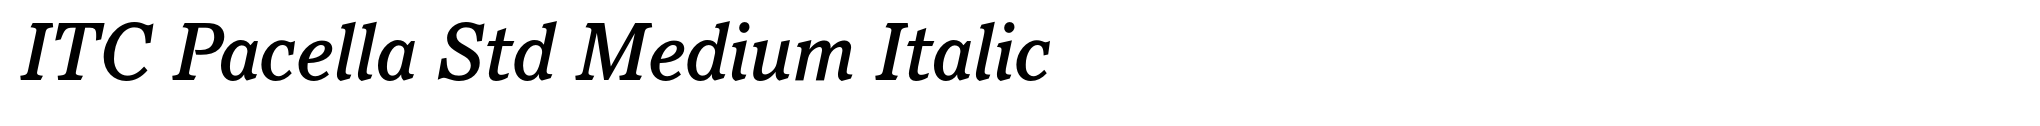 ITC Pacella Std Medium Italic image